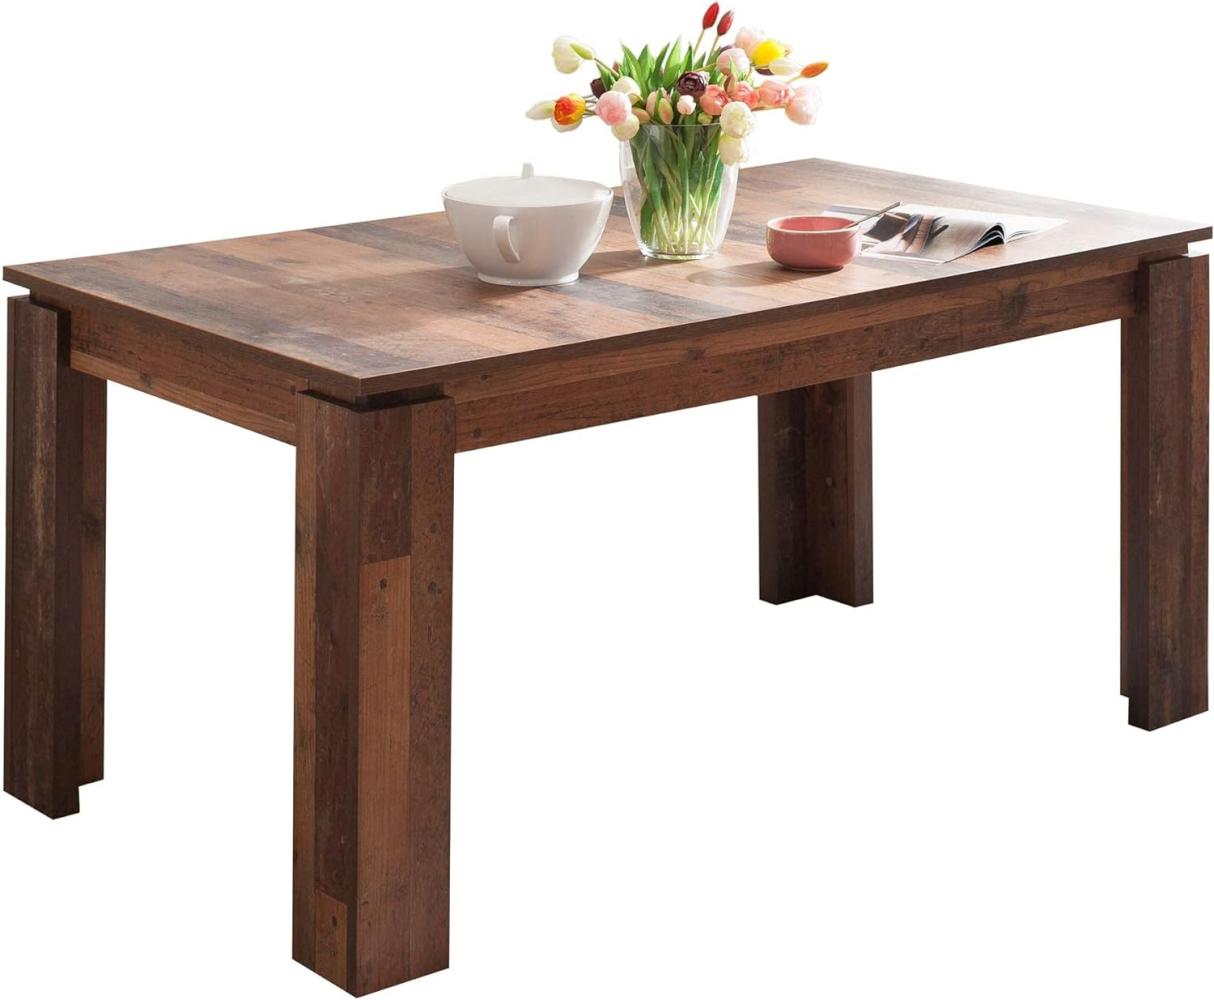 trendteam smart living Esszimmer Küchentisch, Esstisch Tisch Universal, 160 x 77 x 90 cm in Old Wood mit Ausziehfunktion Bild 1